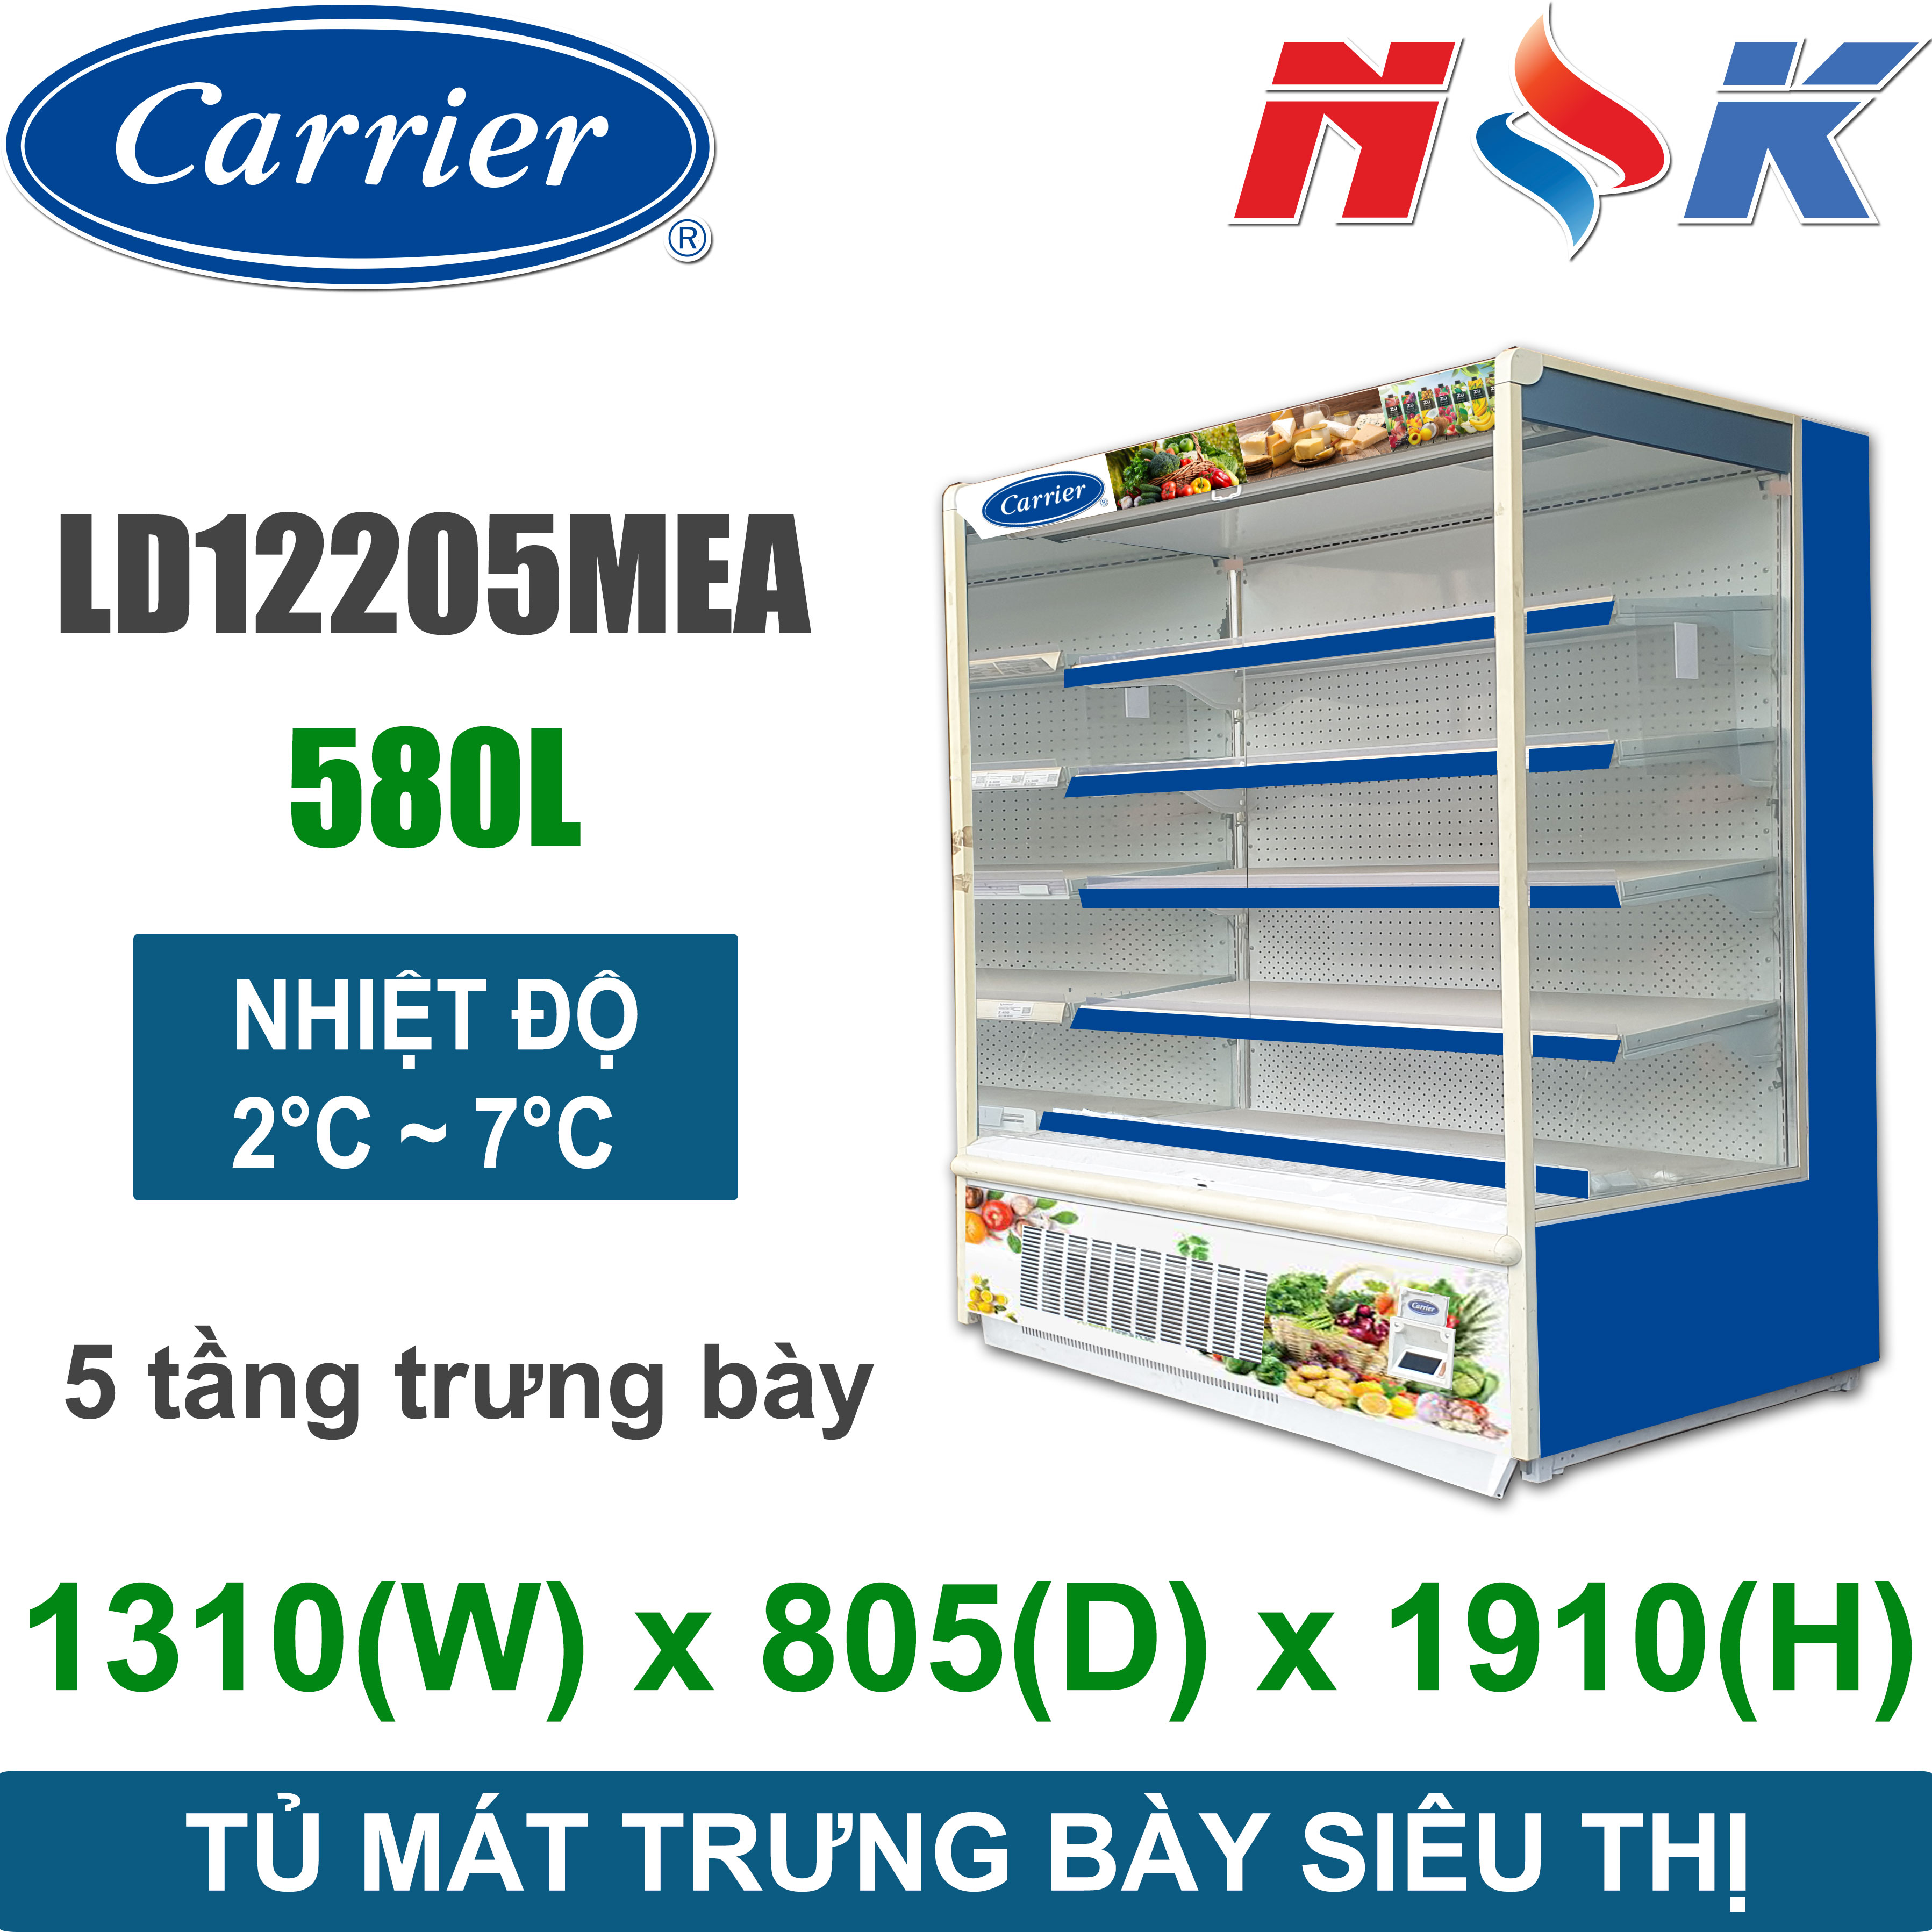 Tủ mát trưng bày siêu thị Carrier LD12205MEA